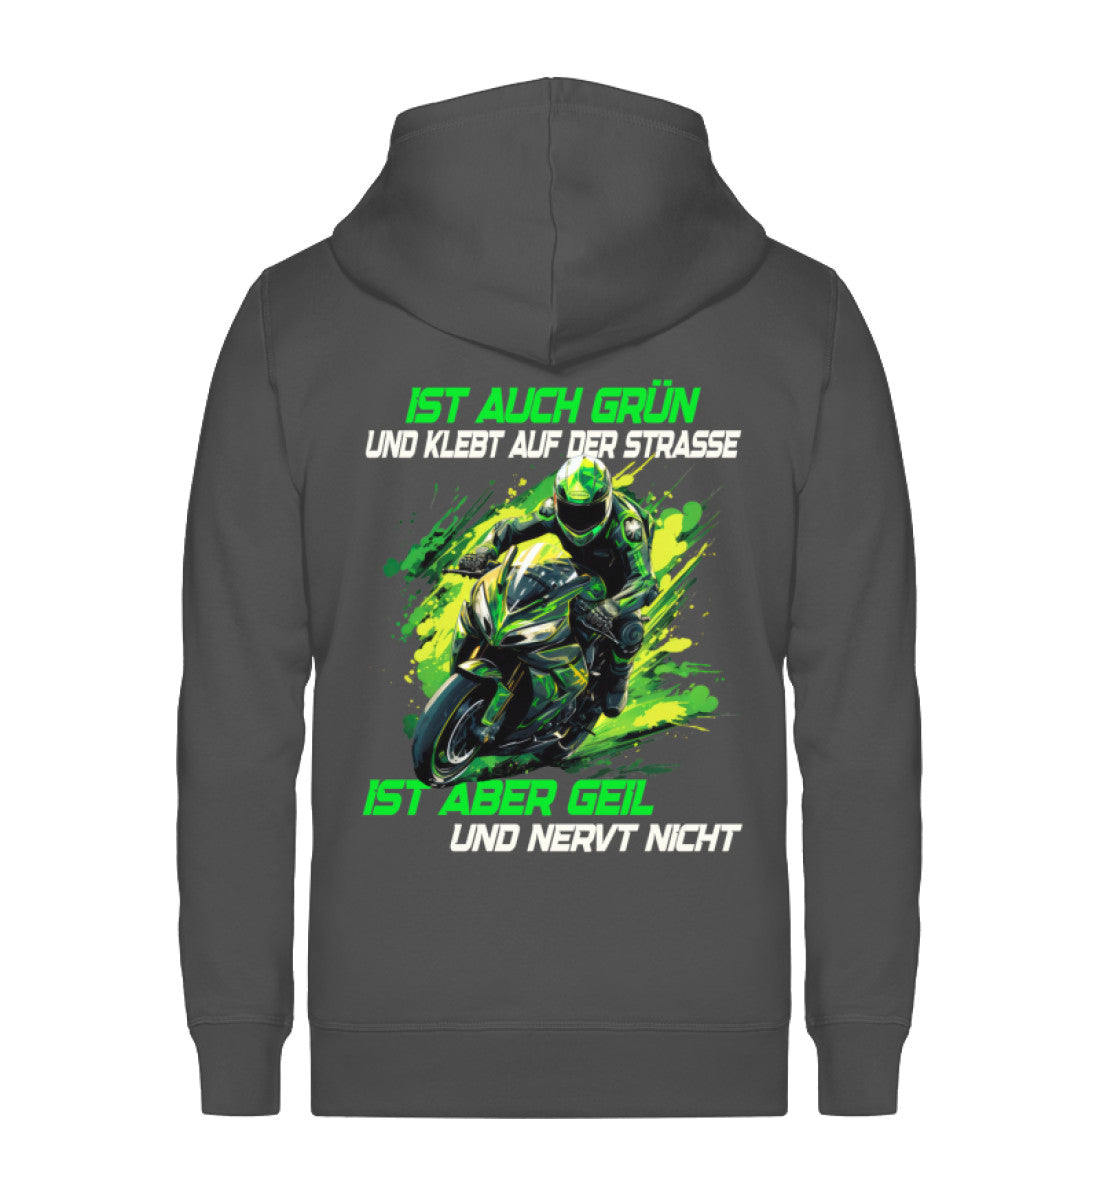 Eine Reißverschluss-Jacke für Motorradfahrer von Wingbikers mit dem Aufdruck, Ist auch grün und klebt auf der Straße, ist aber geil und nervt nicht, in dunkelgrau.